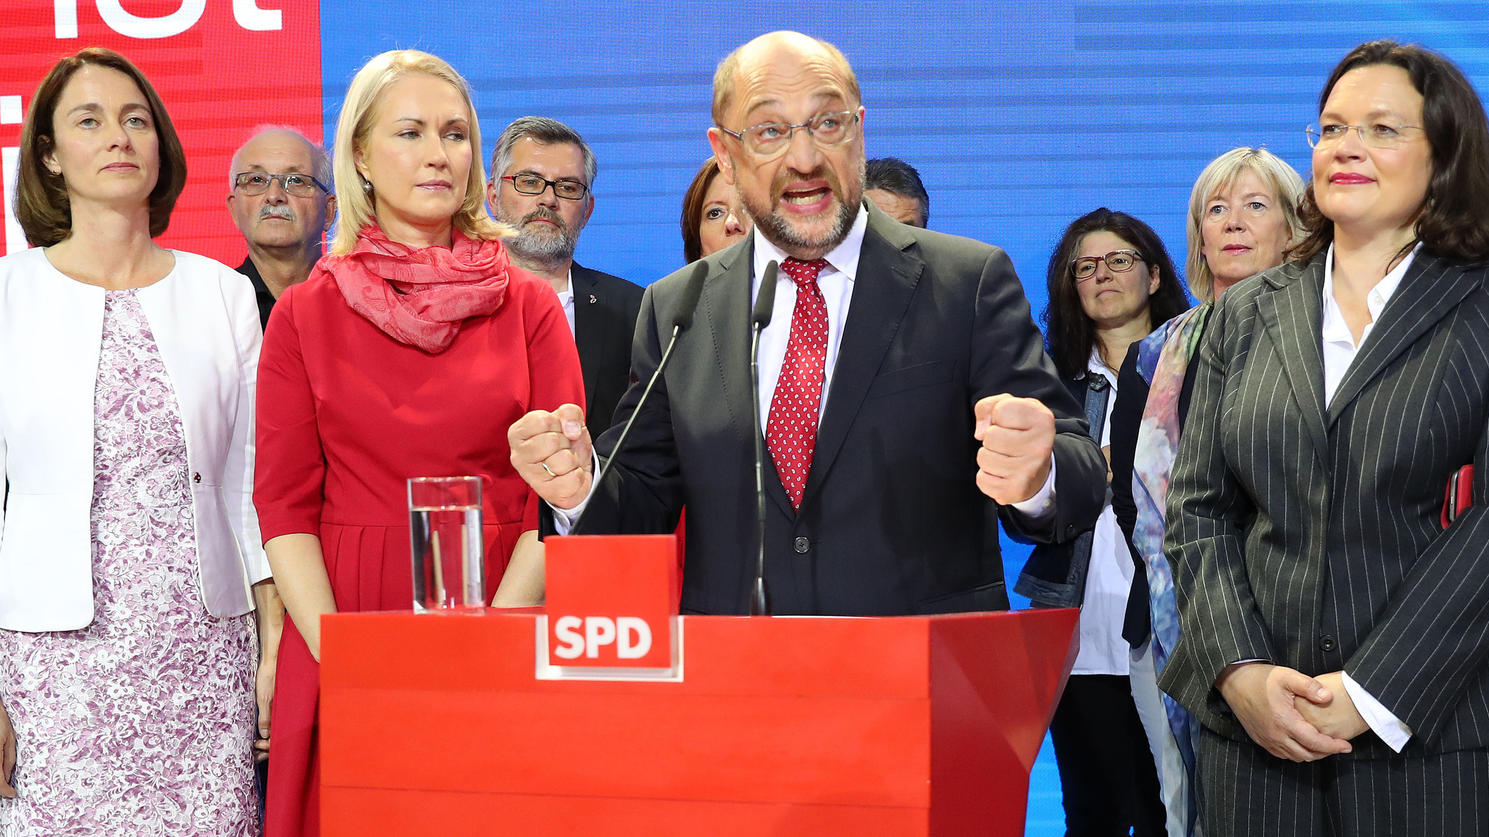 SPD-Kanzlerkandidat Martin Schulz steht am 24.09.2017 in Berlin in der Parteizentrale der SPD auf der Bühne. Schulz reagierte bei der Wahlparty der SPD auf die Veröffentlichung der Hochrechnungen zum Ausgang der Bundestagswahl 2017. L-R: Bundesfamili